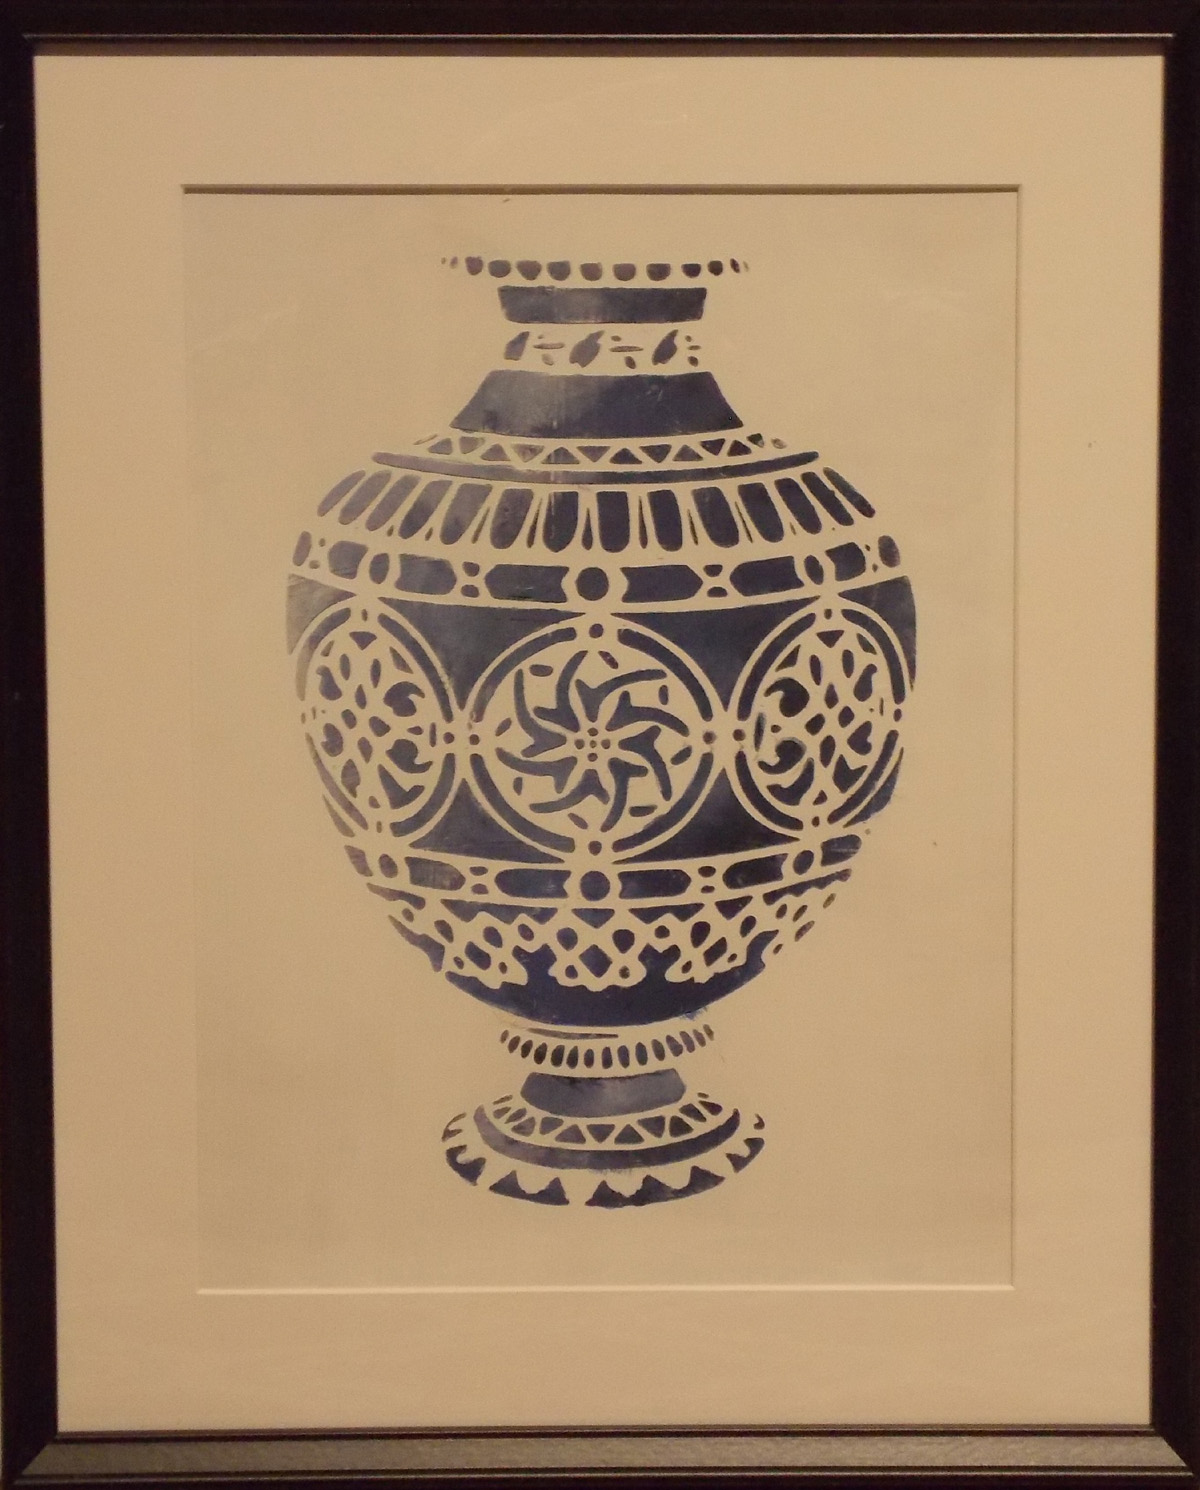 4.6.2022 - 2 kusy váz v modrotisku 3d (zarámované) Cena 1290 kč